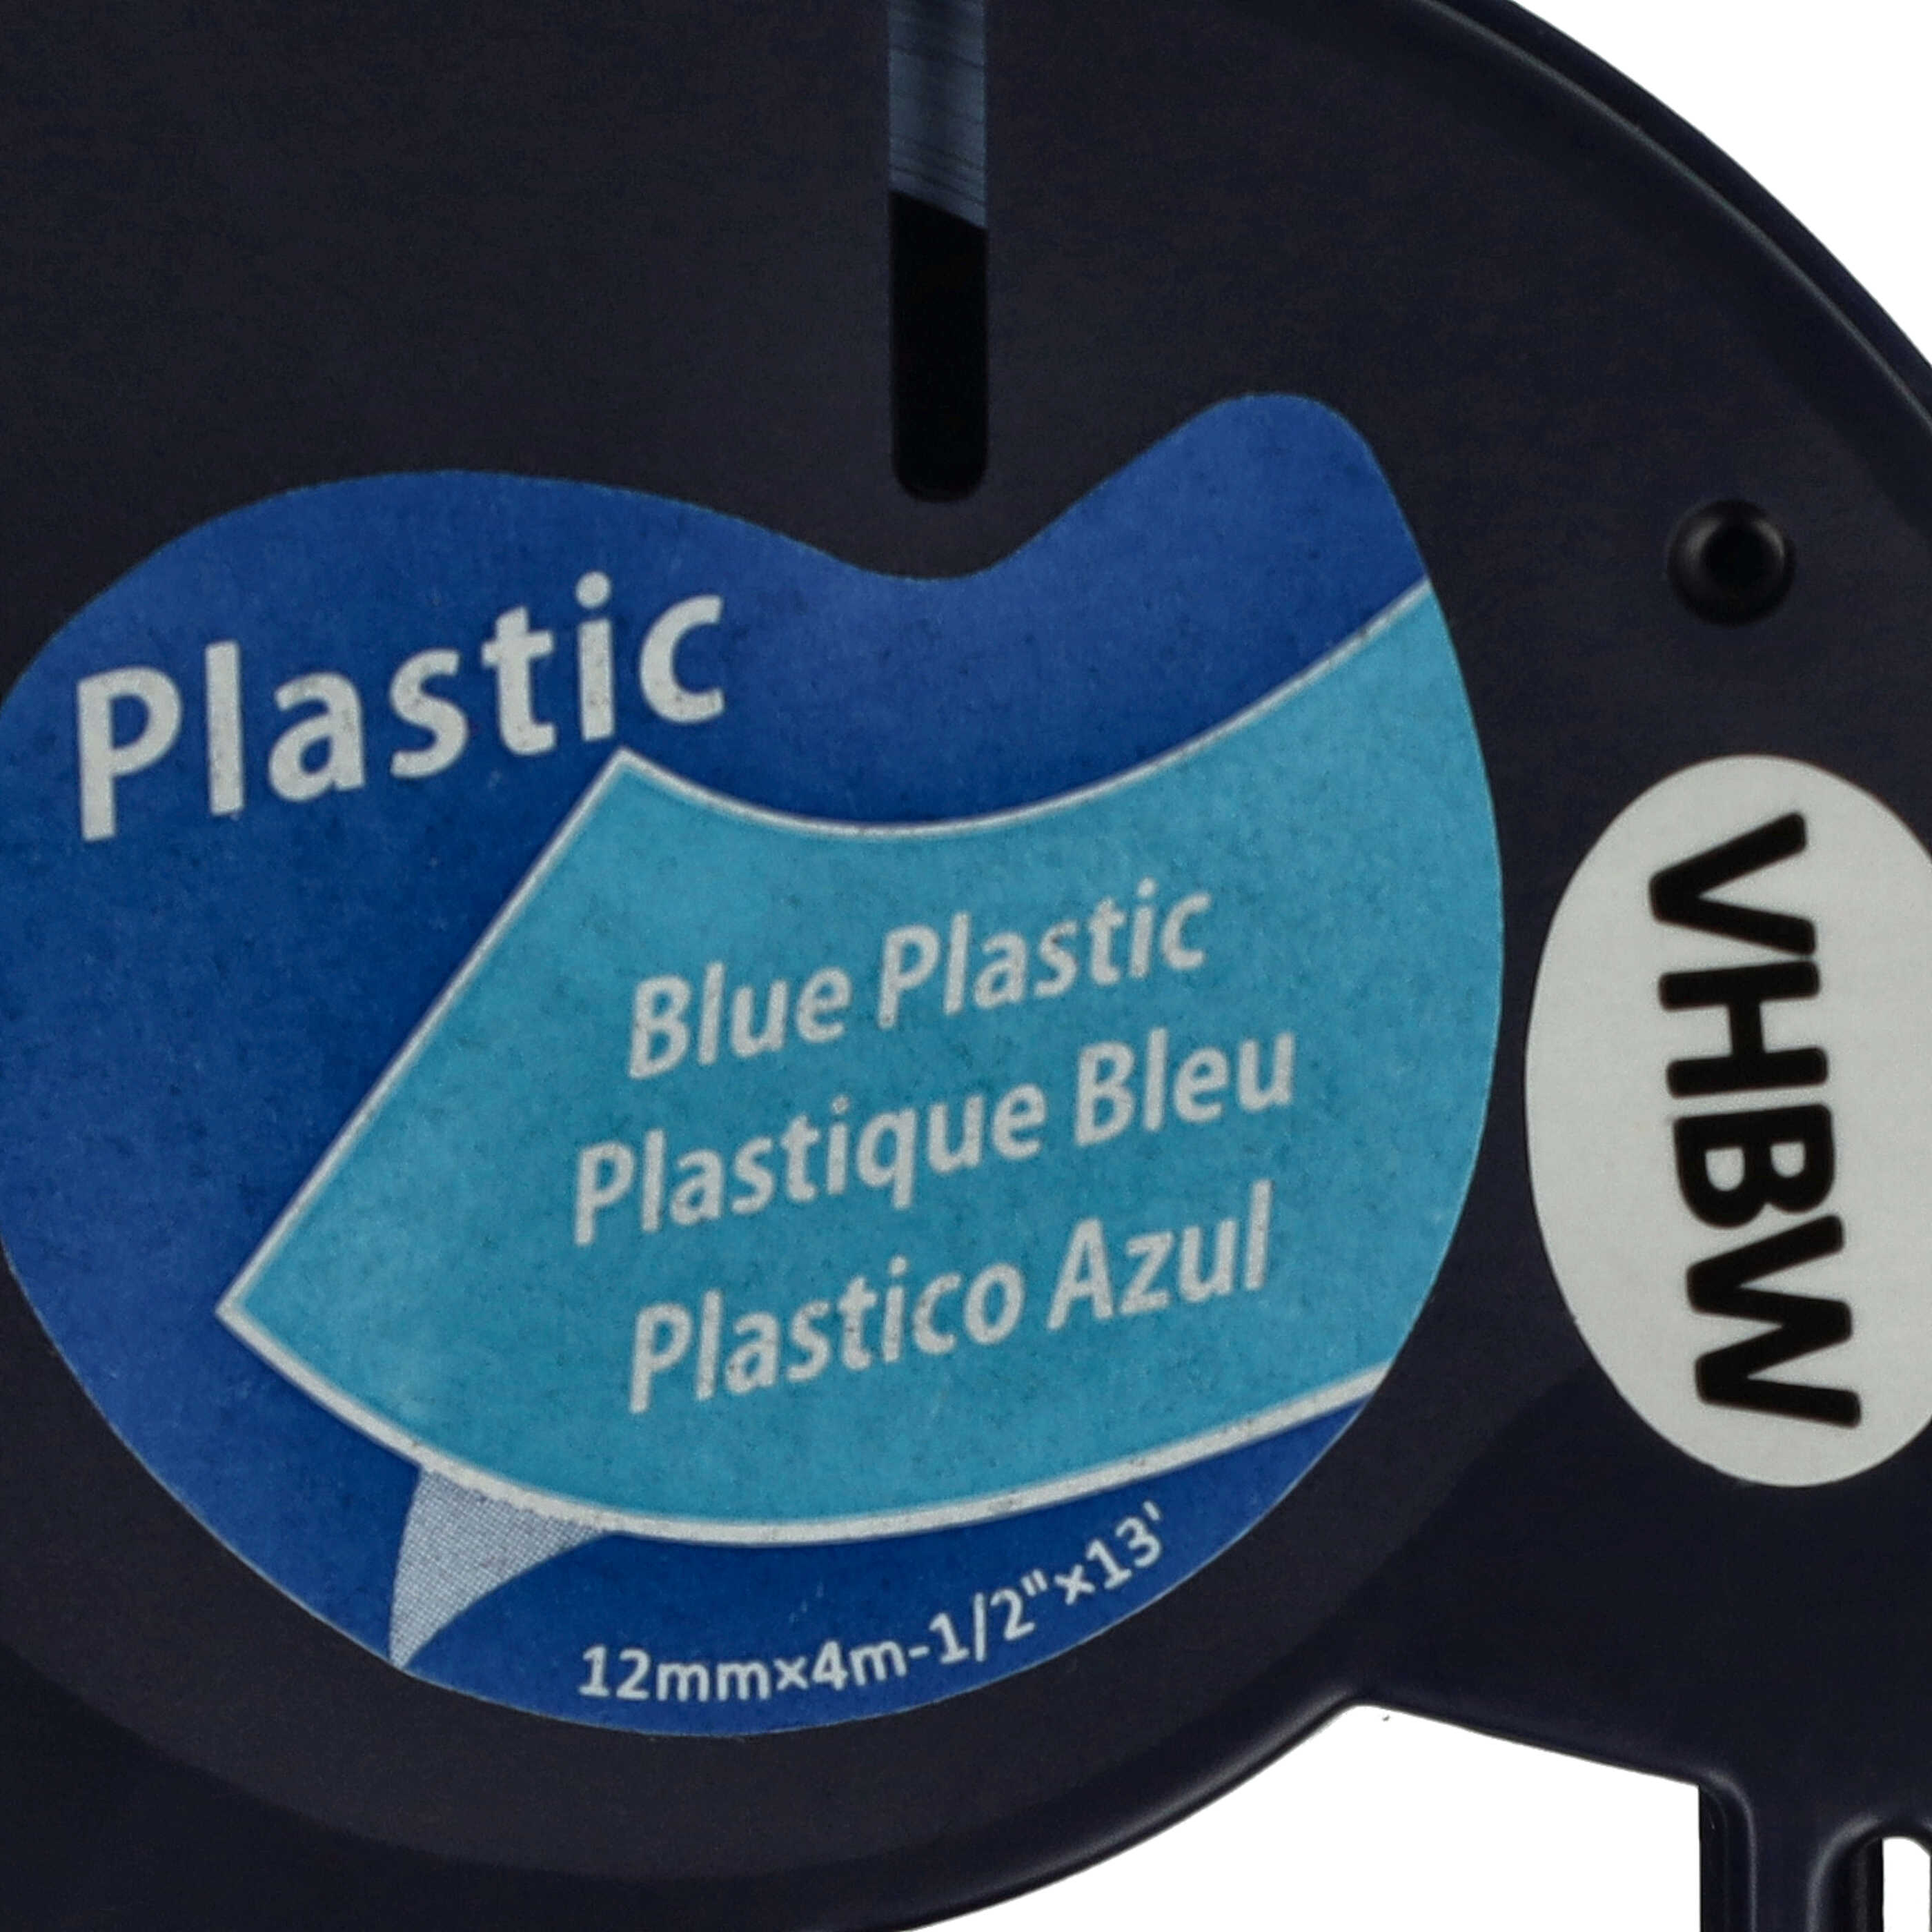 Casete cinta escritura plástico reemplaza Dymo 91225, S0721650 Negro su Azul